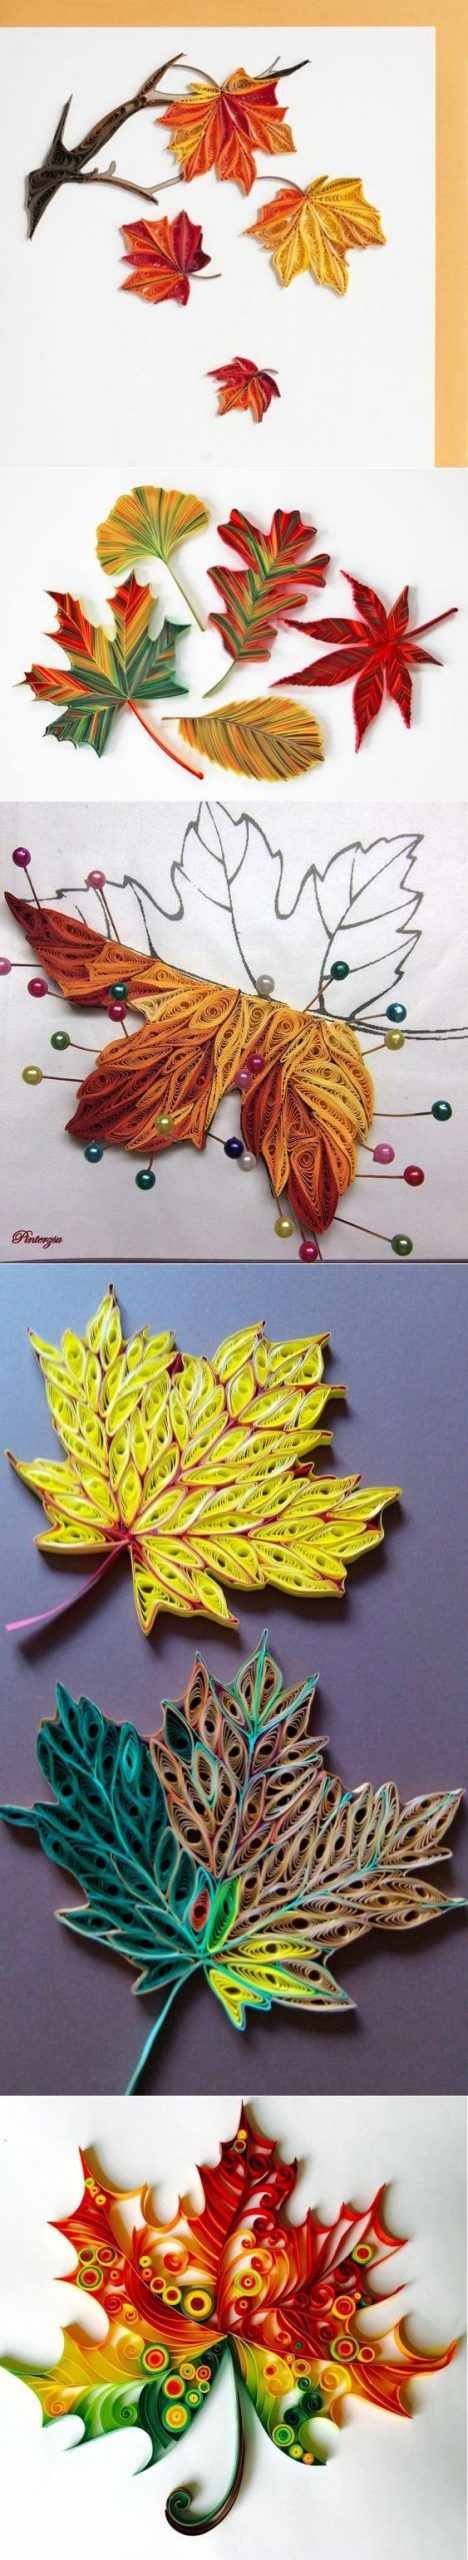 Осенние листья из бумаги технология квиллинг